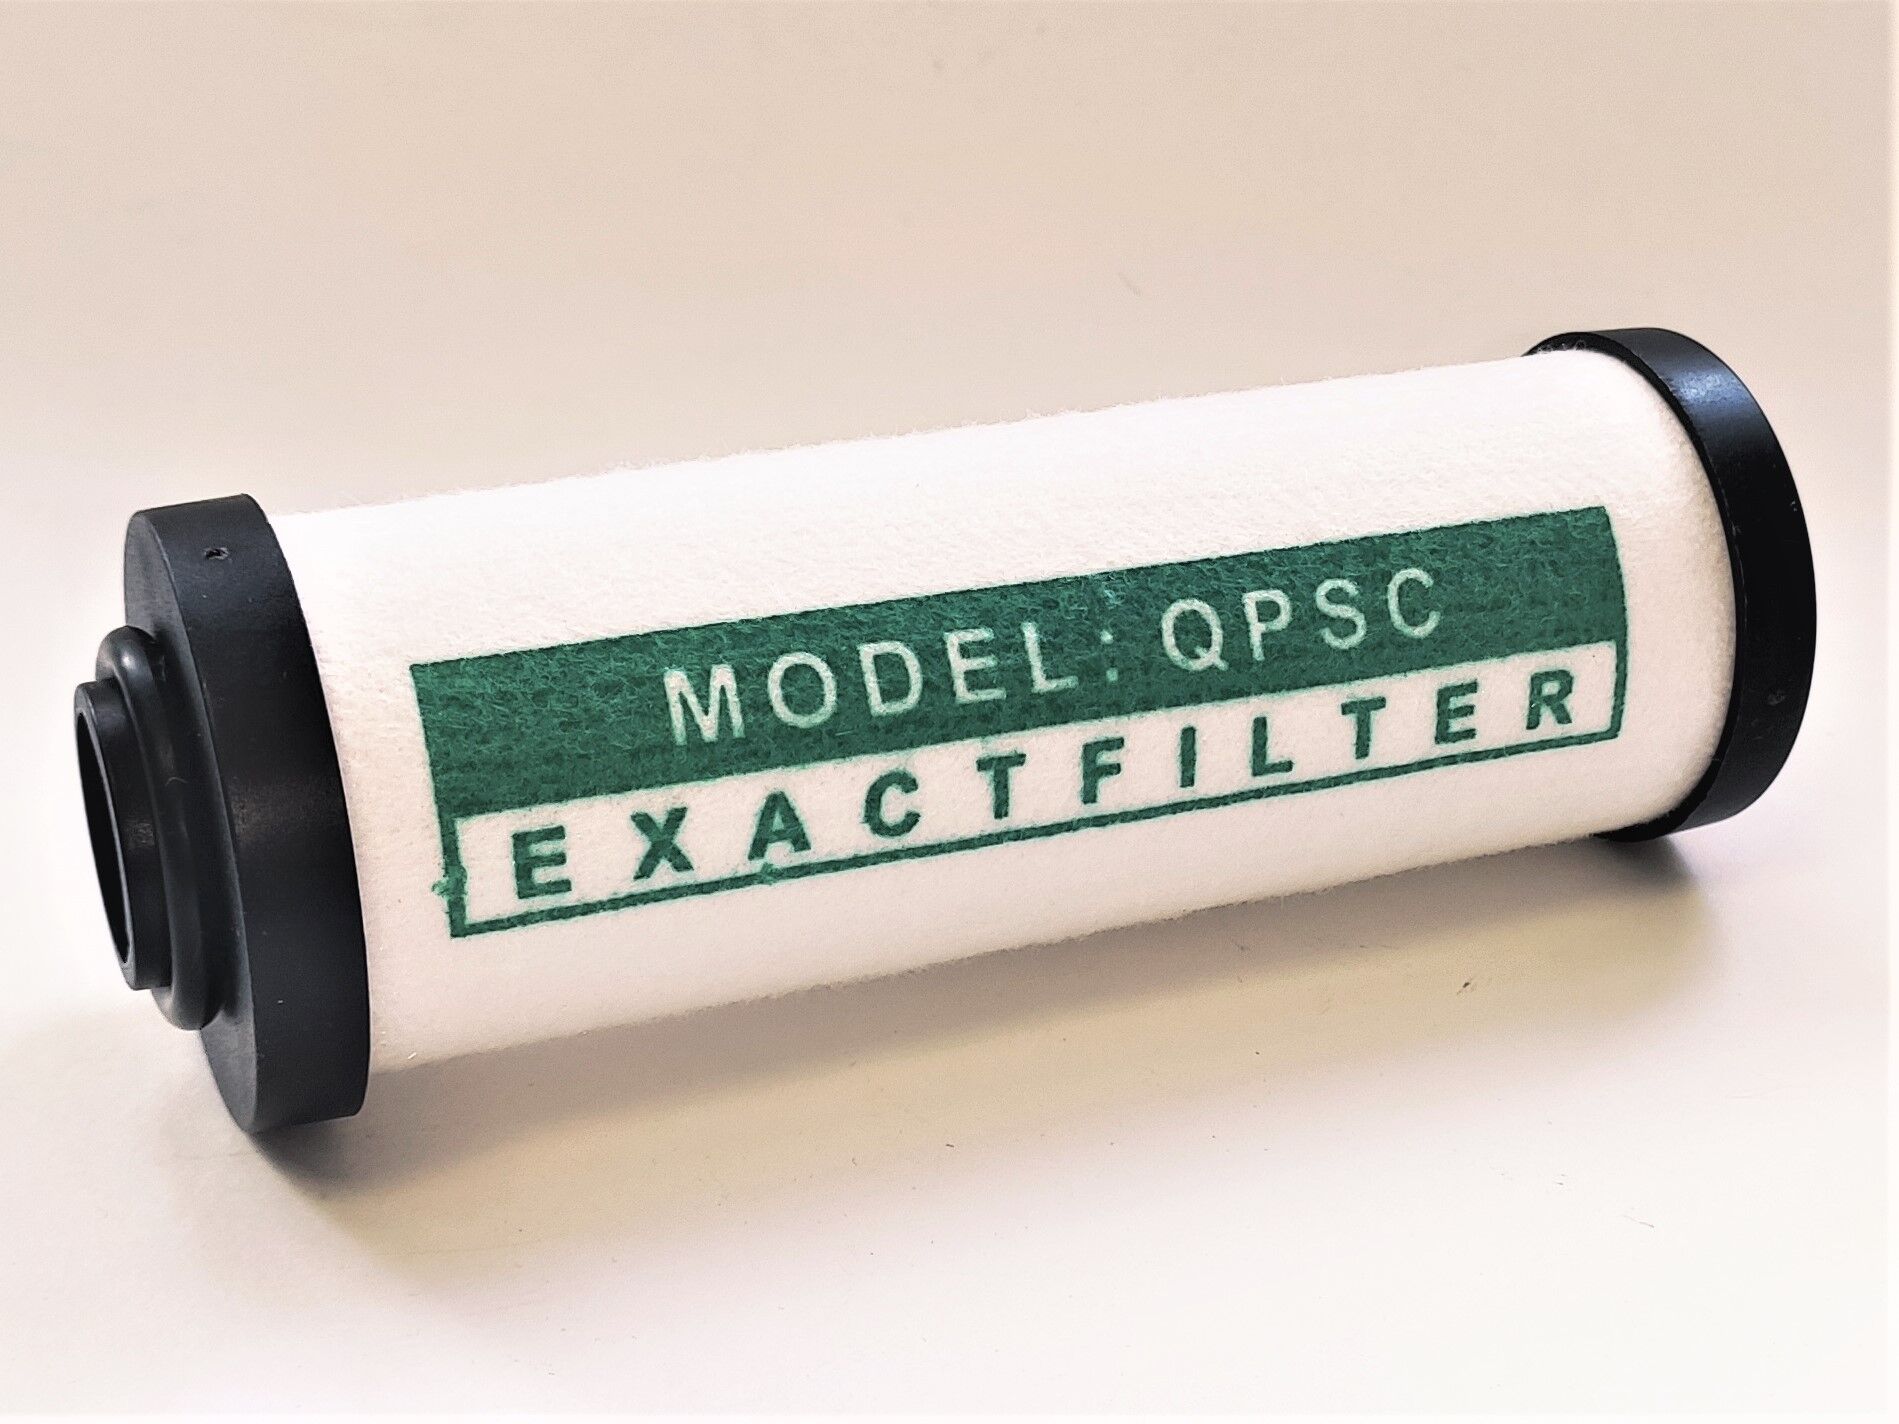 Фильтр грубой очистки Р-015-Р к воздушному масляному компрессору 0,1 мкм